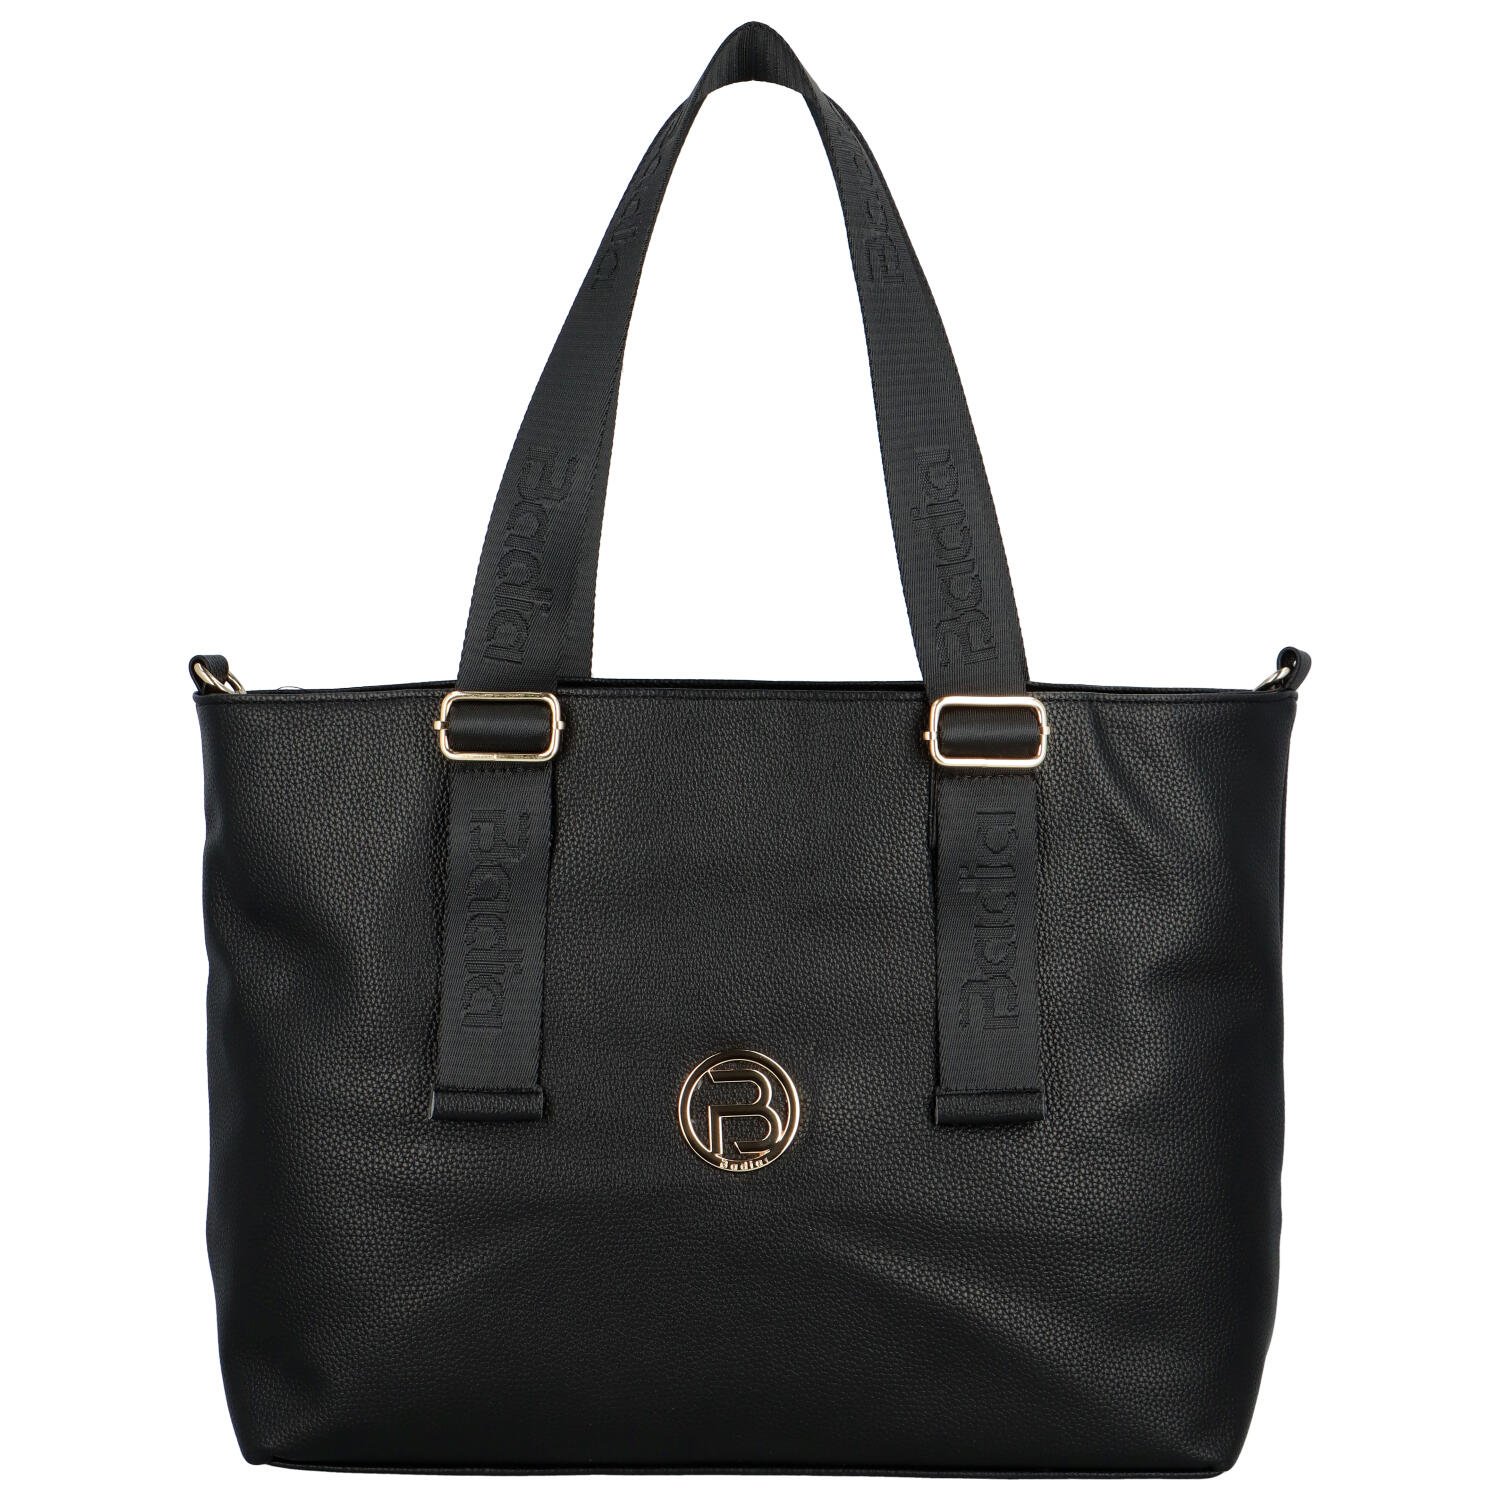 Trendy dámská koženková kabelka na rameno Orynax, černá